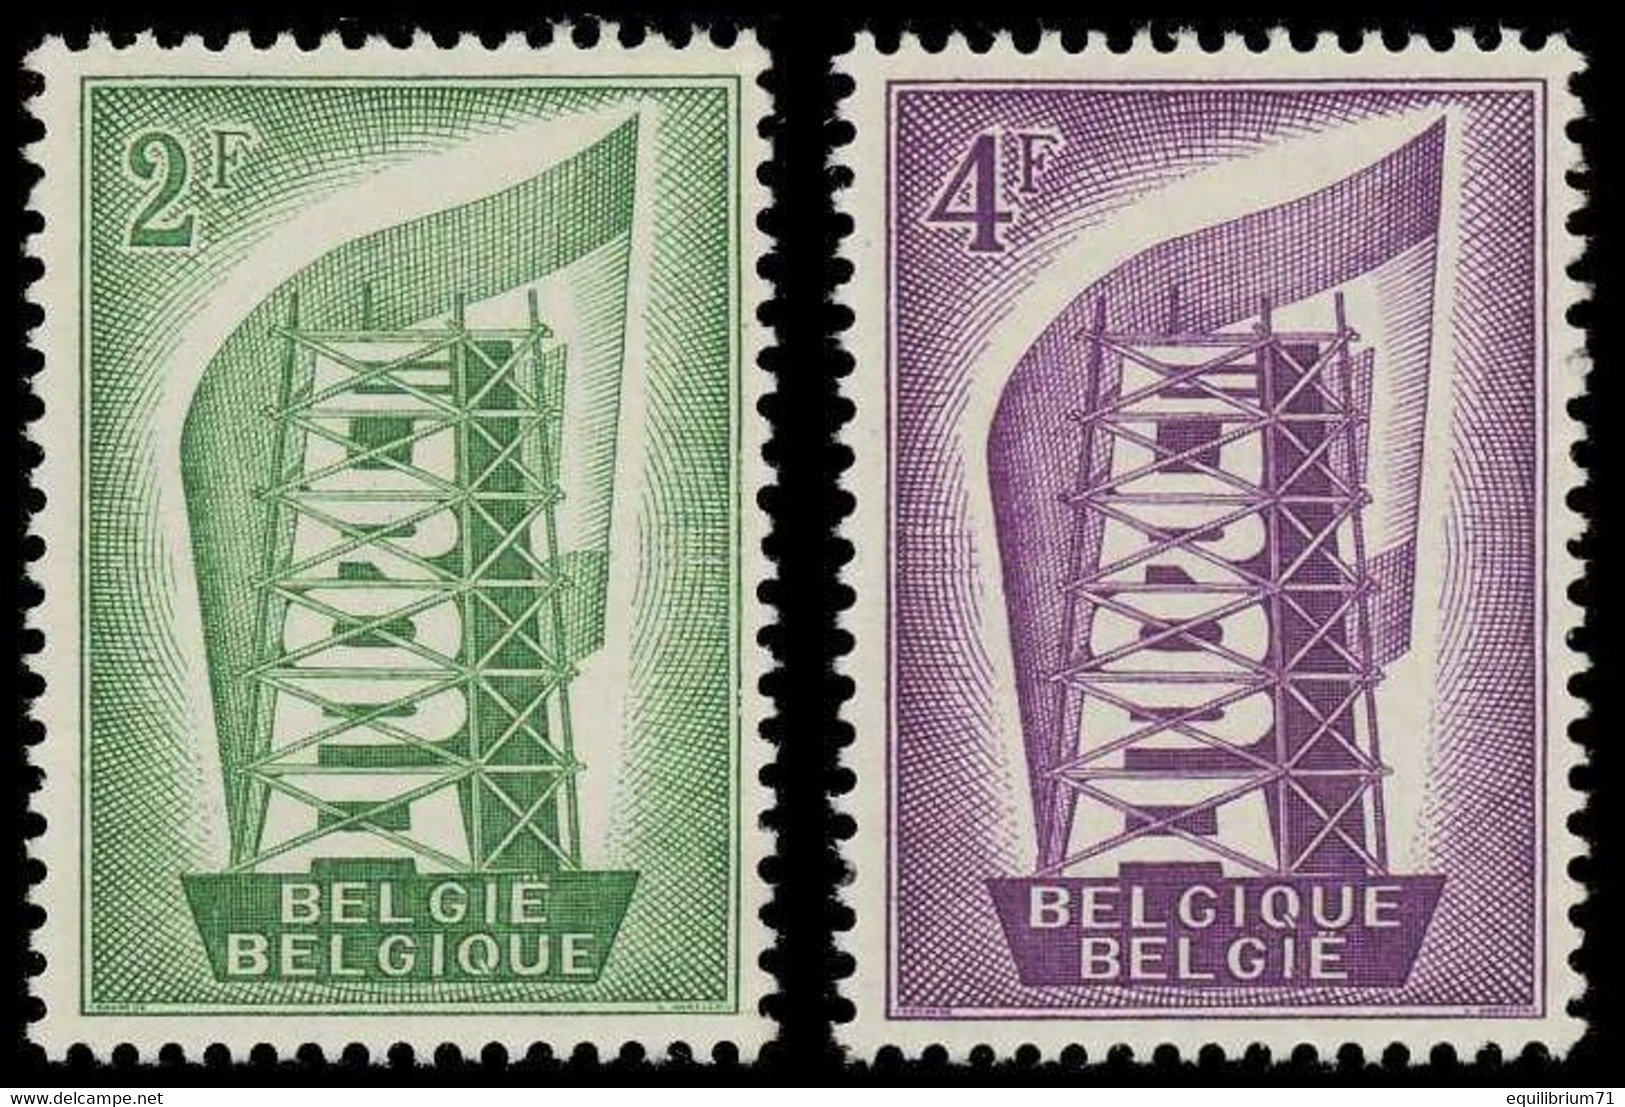 994/995* - EUROPA 1956 - BELGIQUE / BELGIË - 1956